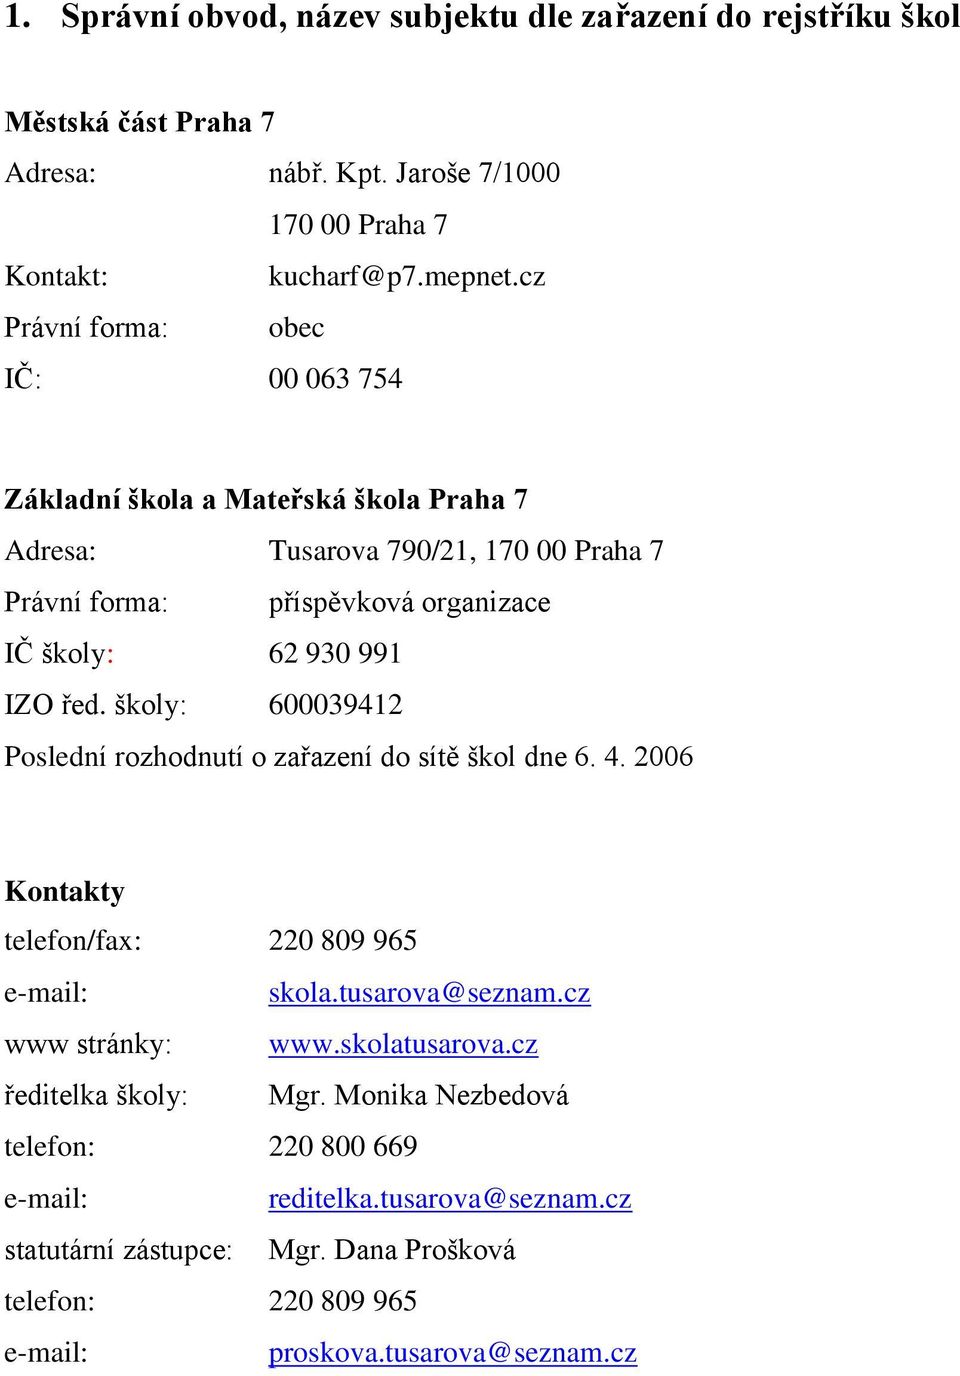 řed. školy: 600039412 Poslední rozhodnutí o zařazení do sítě škol dne 6. 4. 2006 Kontakty telefon/fax: 220 809 965 e-mail: skola.tusarova@seznam.cz www stránky: www.skolatusarova.